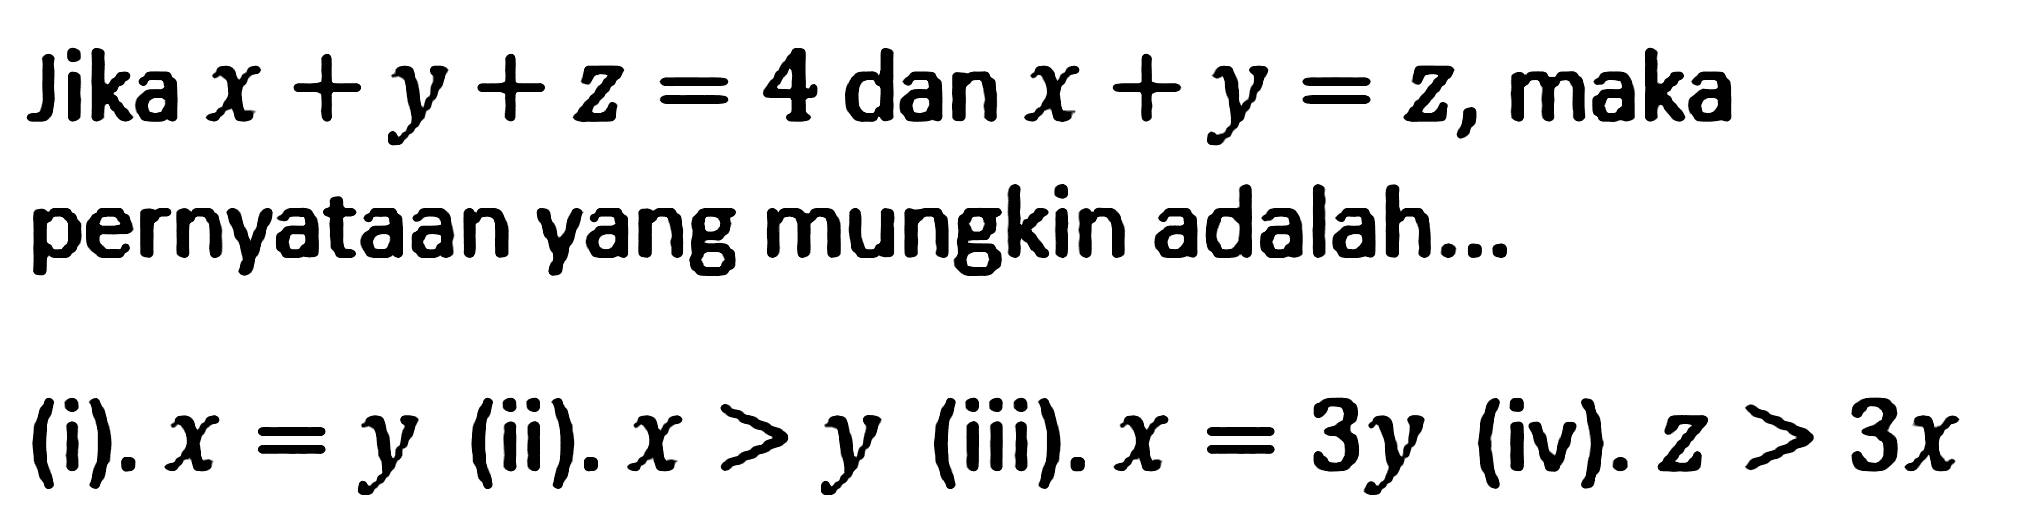 Jika x+y+z=4 dan x+y=z, maka pernyataan yang mungkin adalah... (i). x=y (ii). x>y (iii). x=3y (iv). z>3x